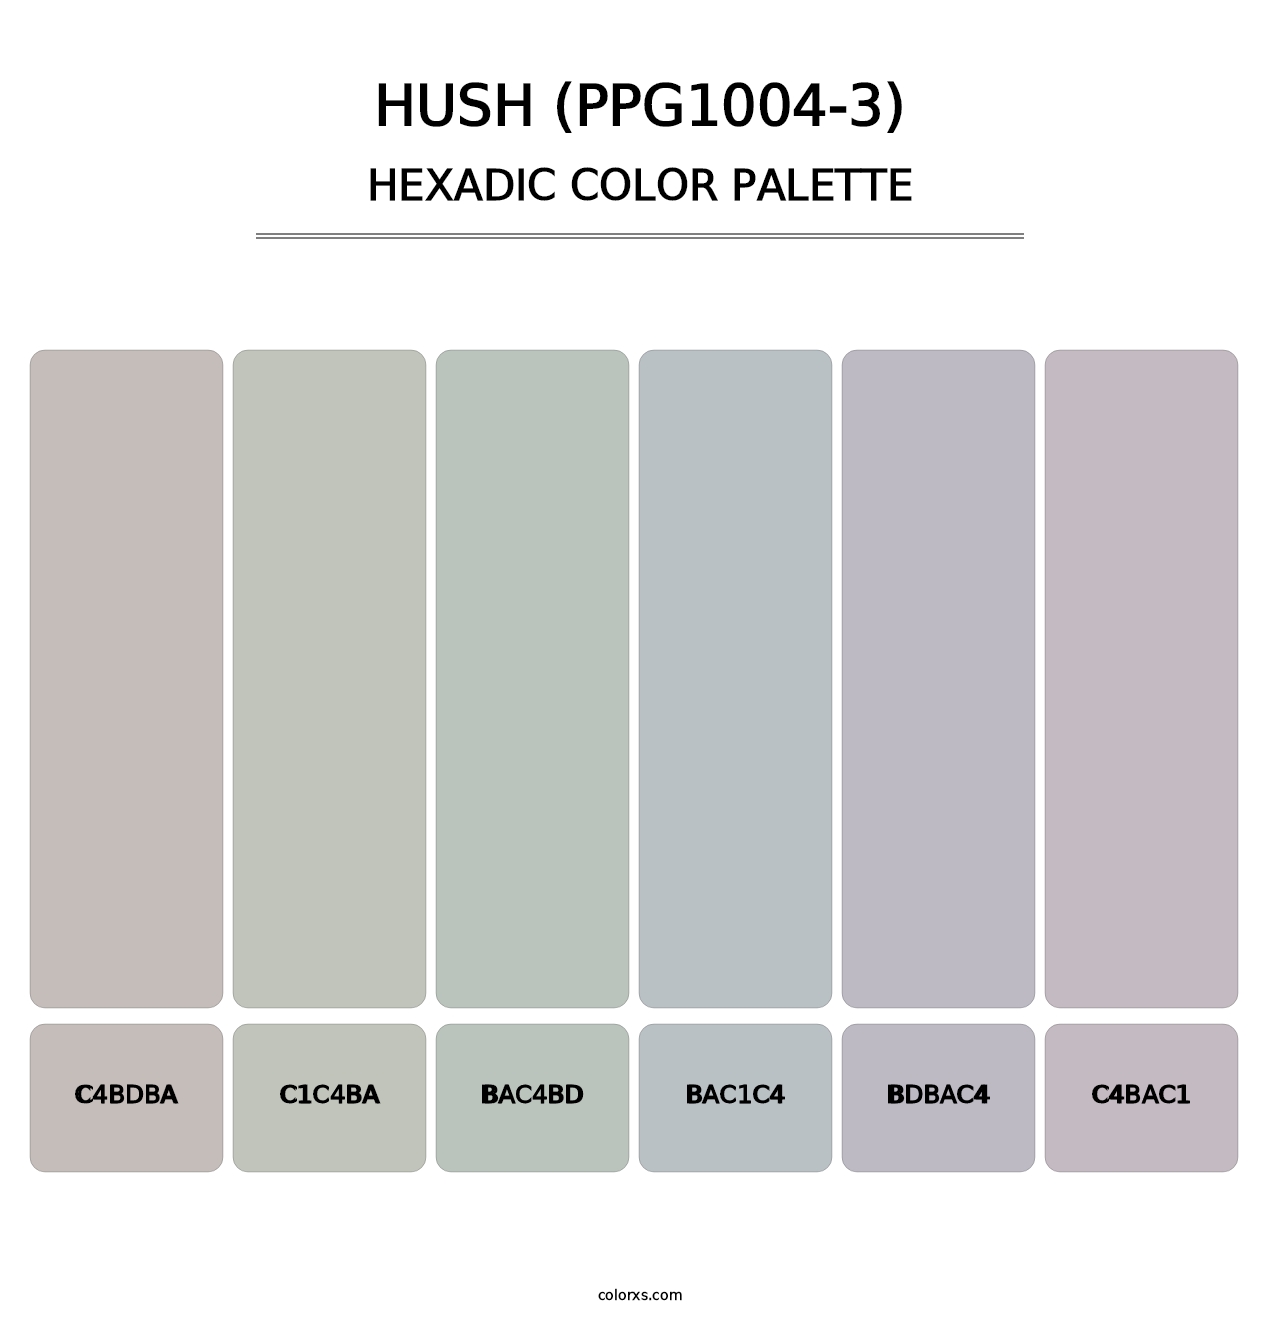 Hush (PPG1004-3) - Hexadic Color Palette